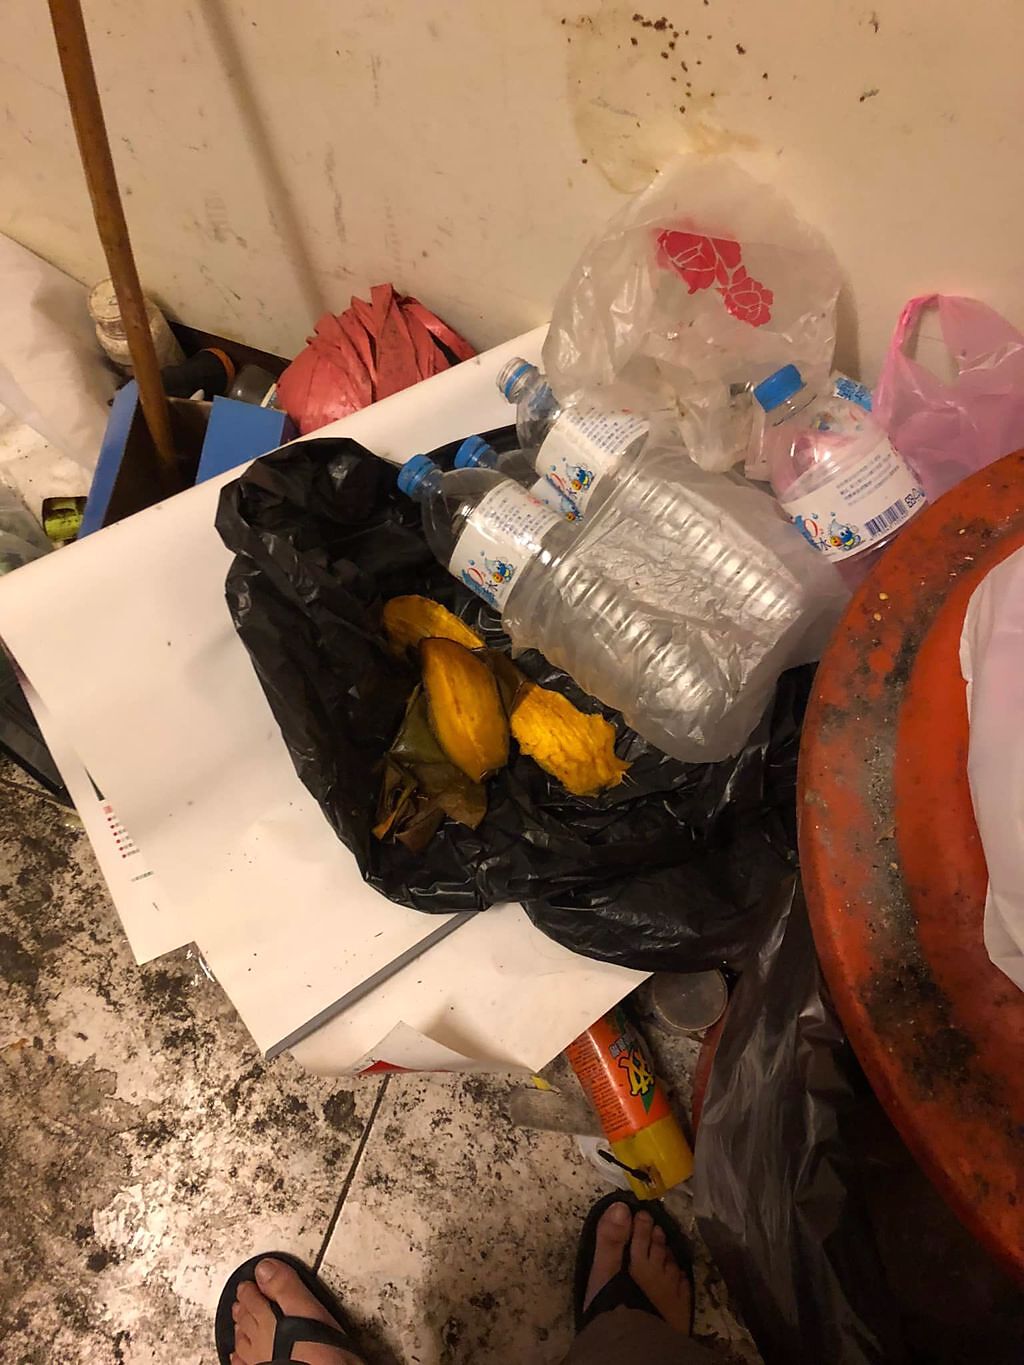 吃完的芒果籽、礦泉水瓶全丟在垃圾桶旁不處理。(翻攝自爆廢公社)